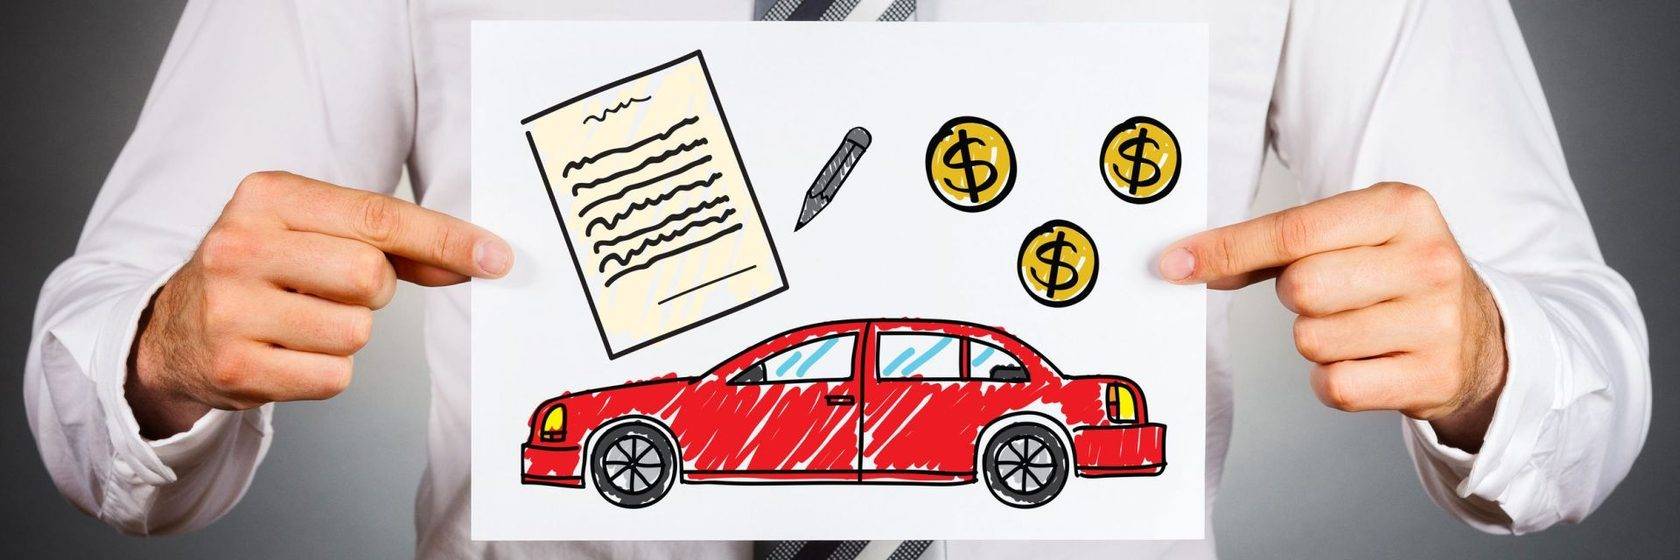 Как купить машину в кредит в автосалоне: основное отличия от обычного кредита в банке